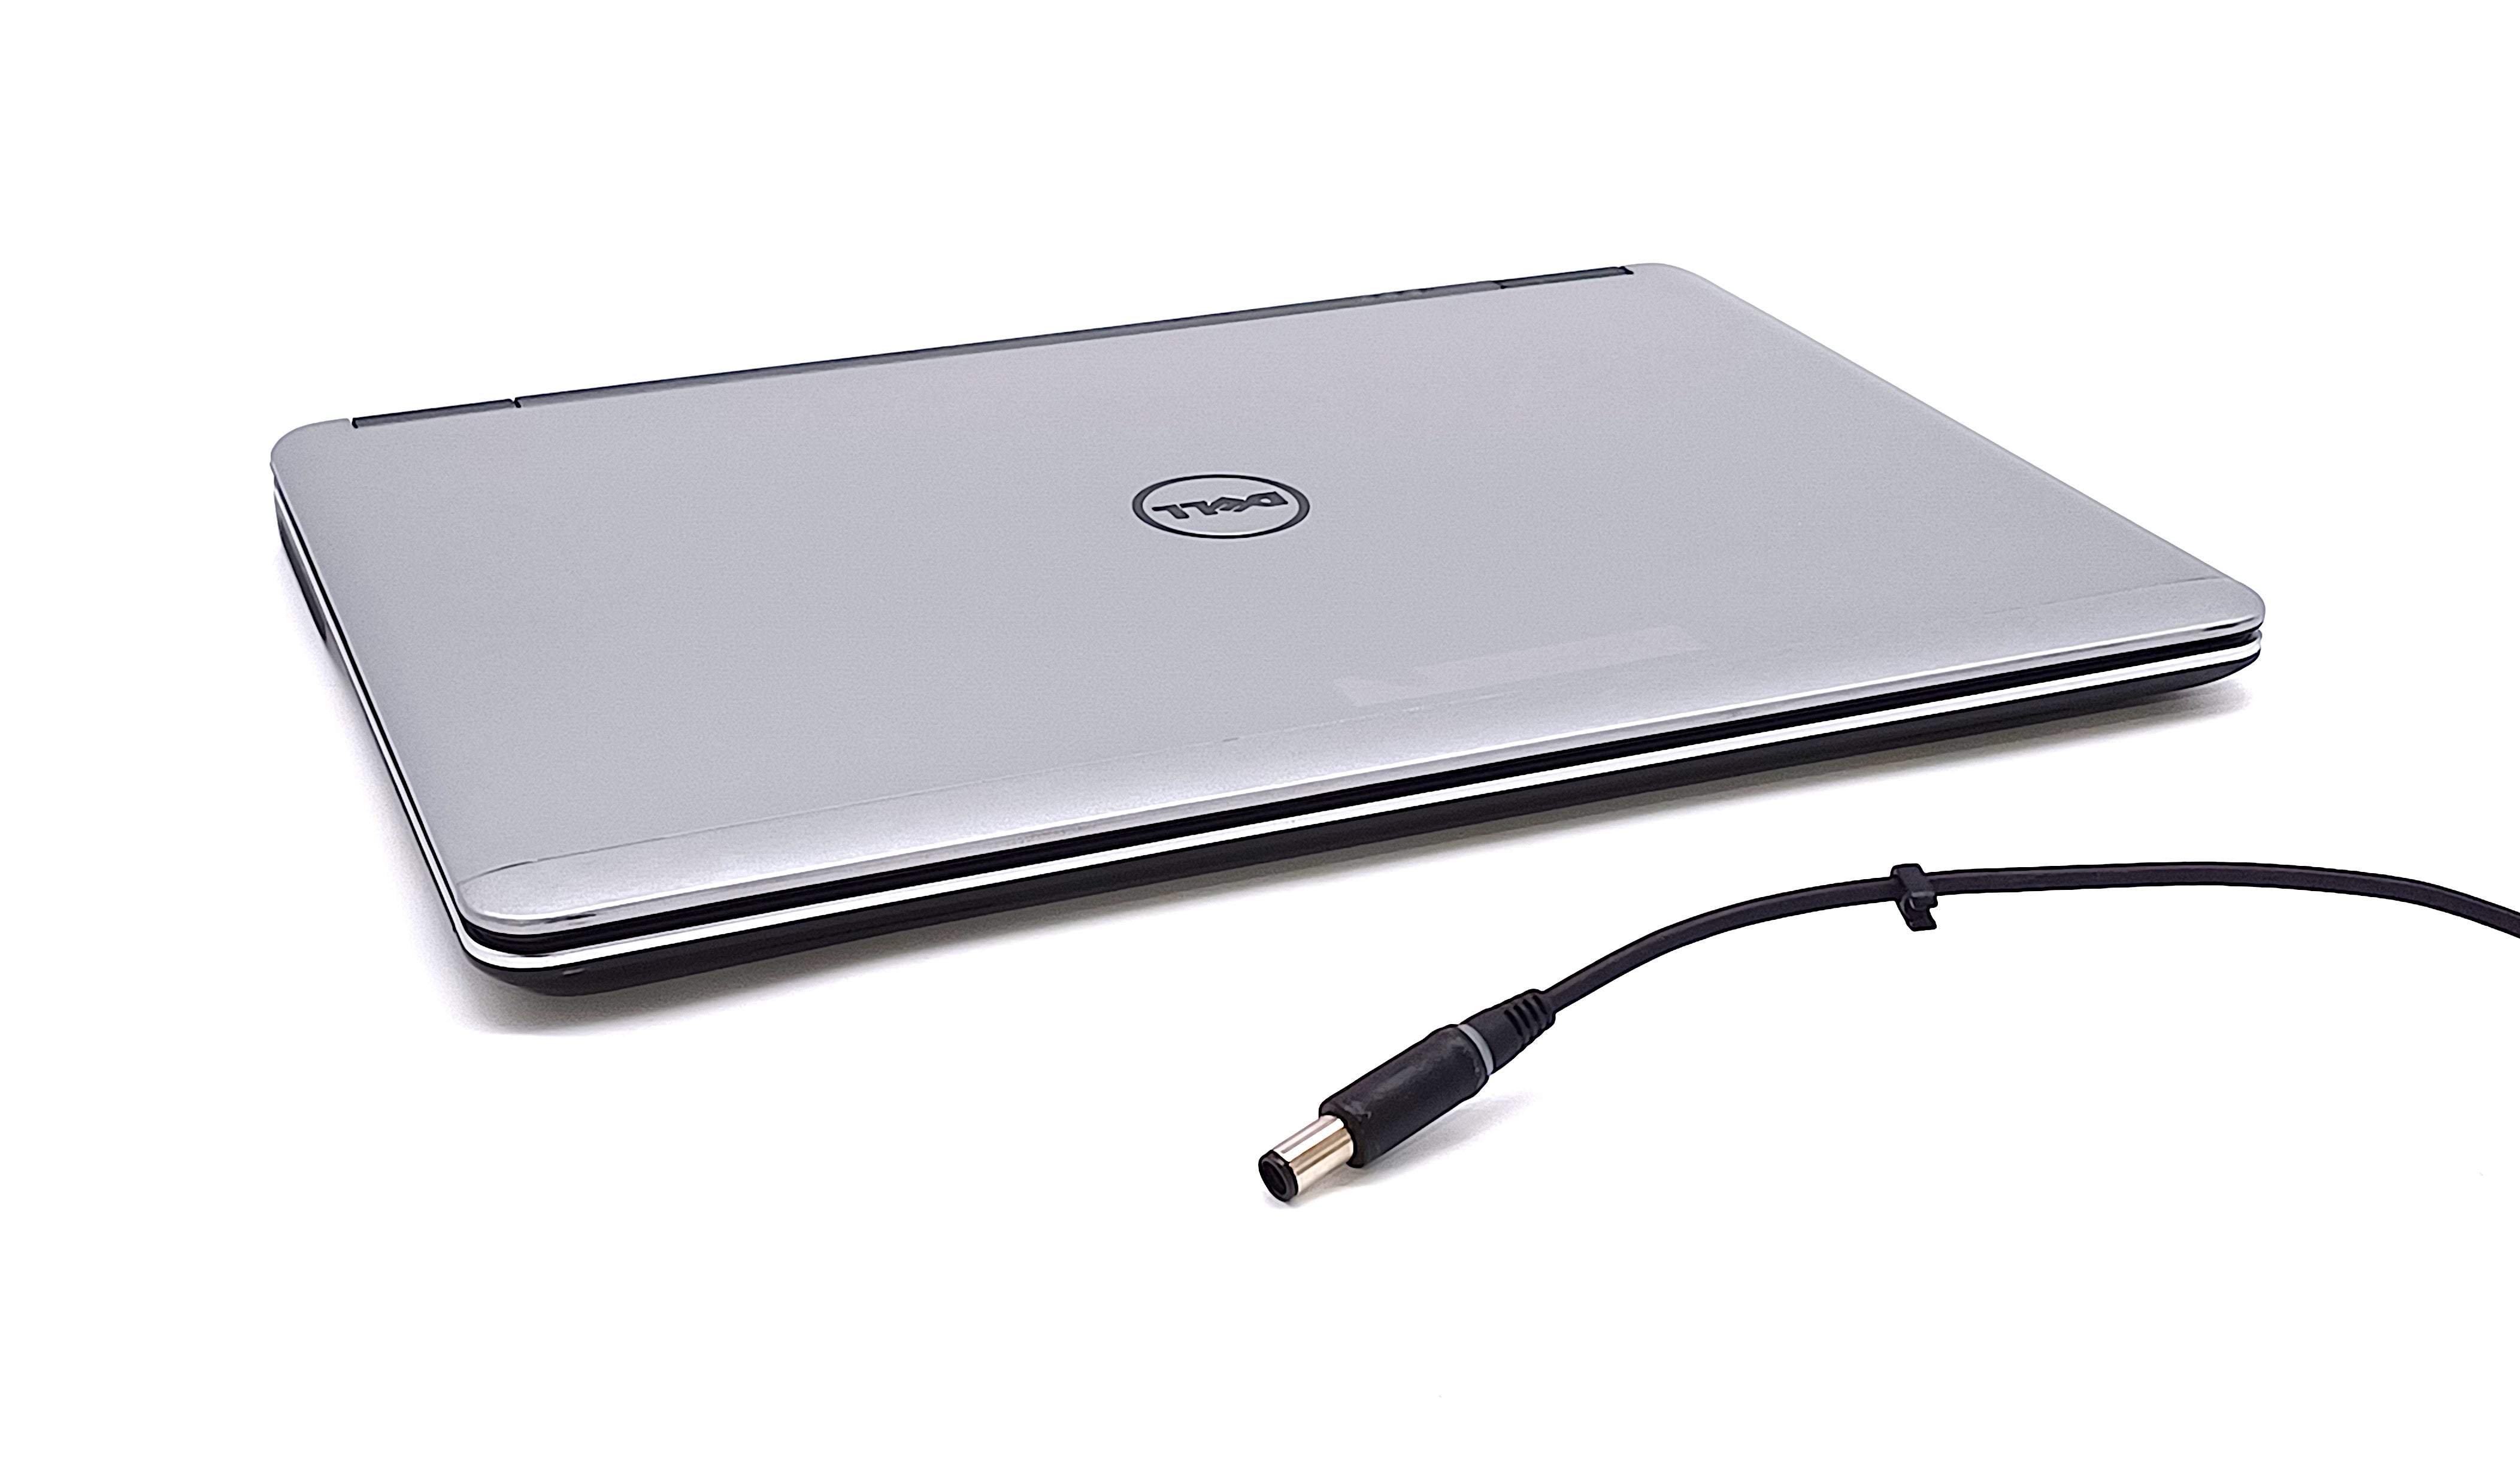 Dell Latitude E7440 Laptop, 14" Core i7 4th Gen, 8GB RAM, 256GB SSD